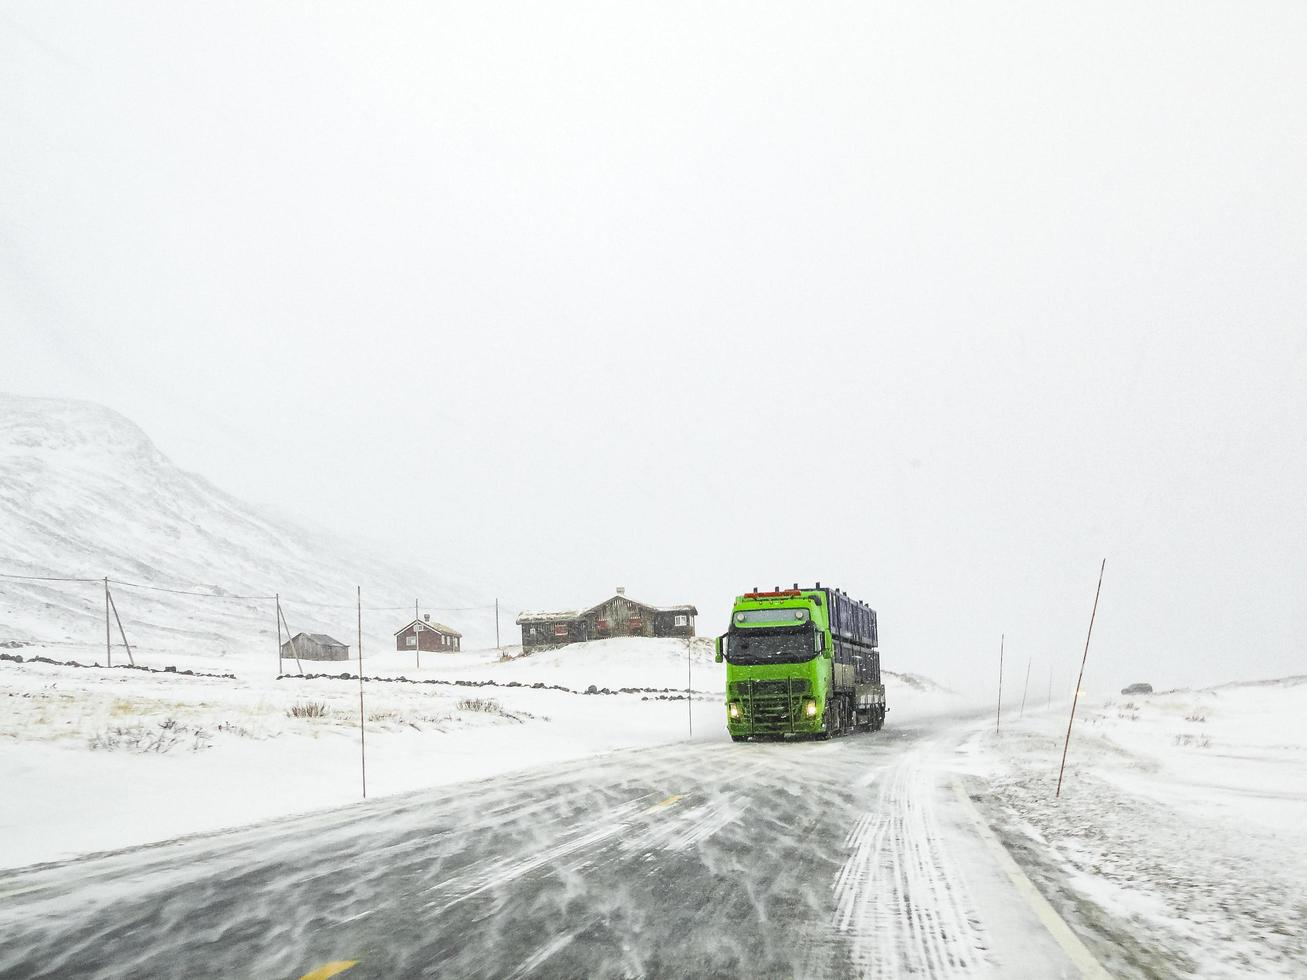 conduciendo a través del paisaje nevado de la carretera, noruega. camión verde al frente. foto